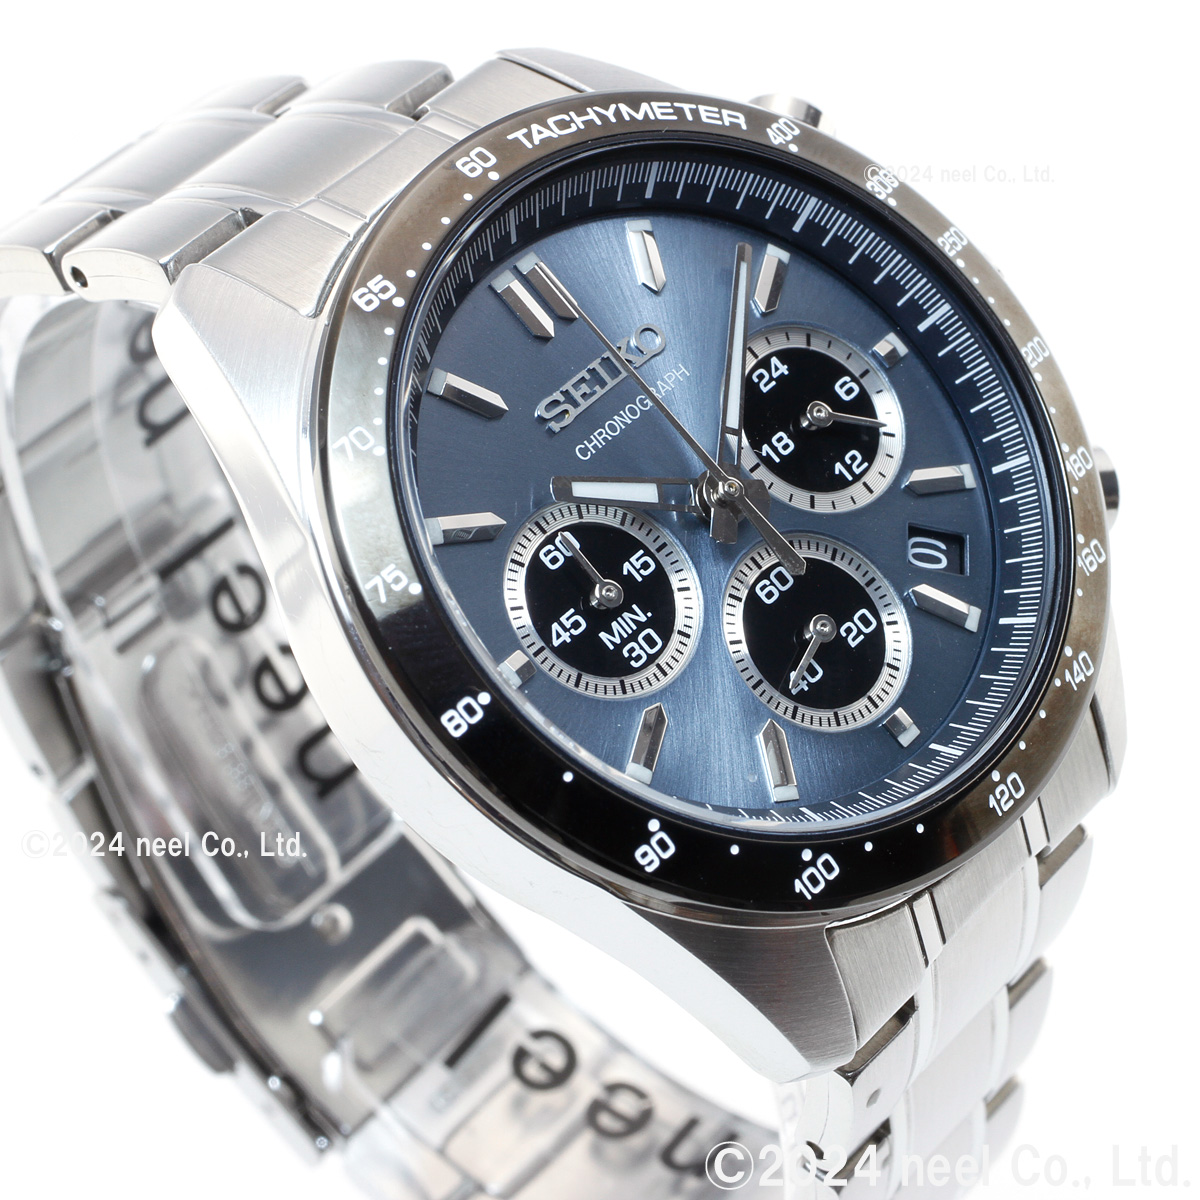 セイコー セレクション メンズ 8Tクロノ SBTR027 腕時計 クロノグラフ SEIKO SELECTION